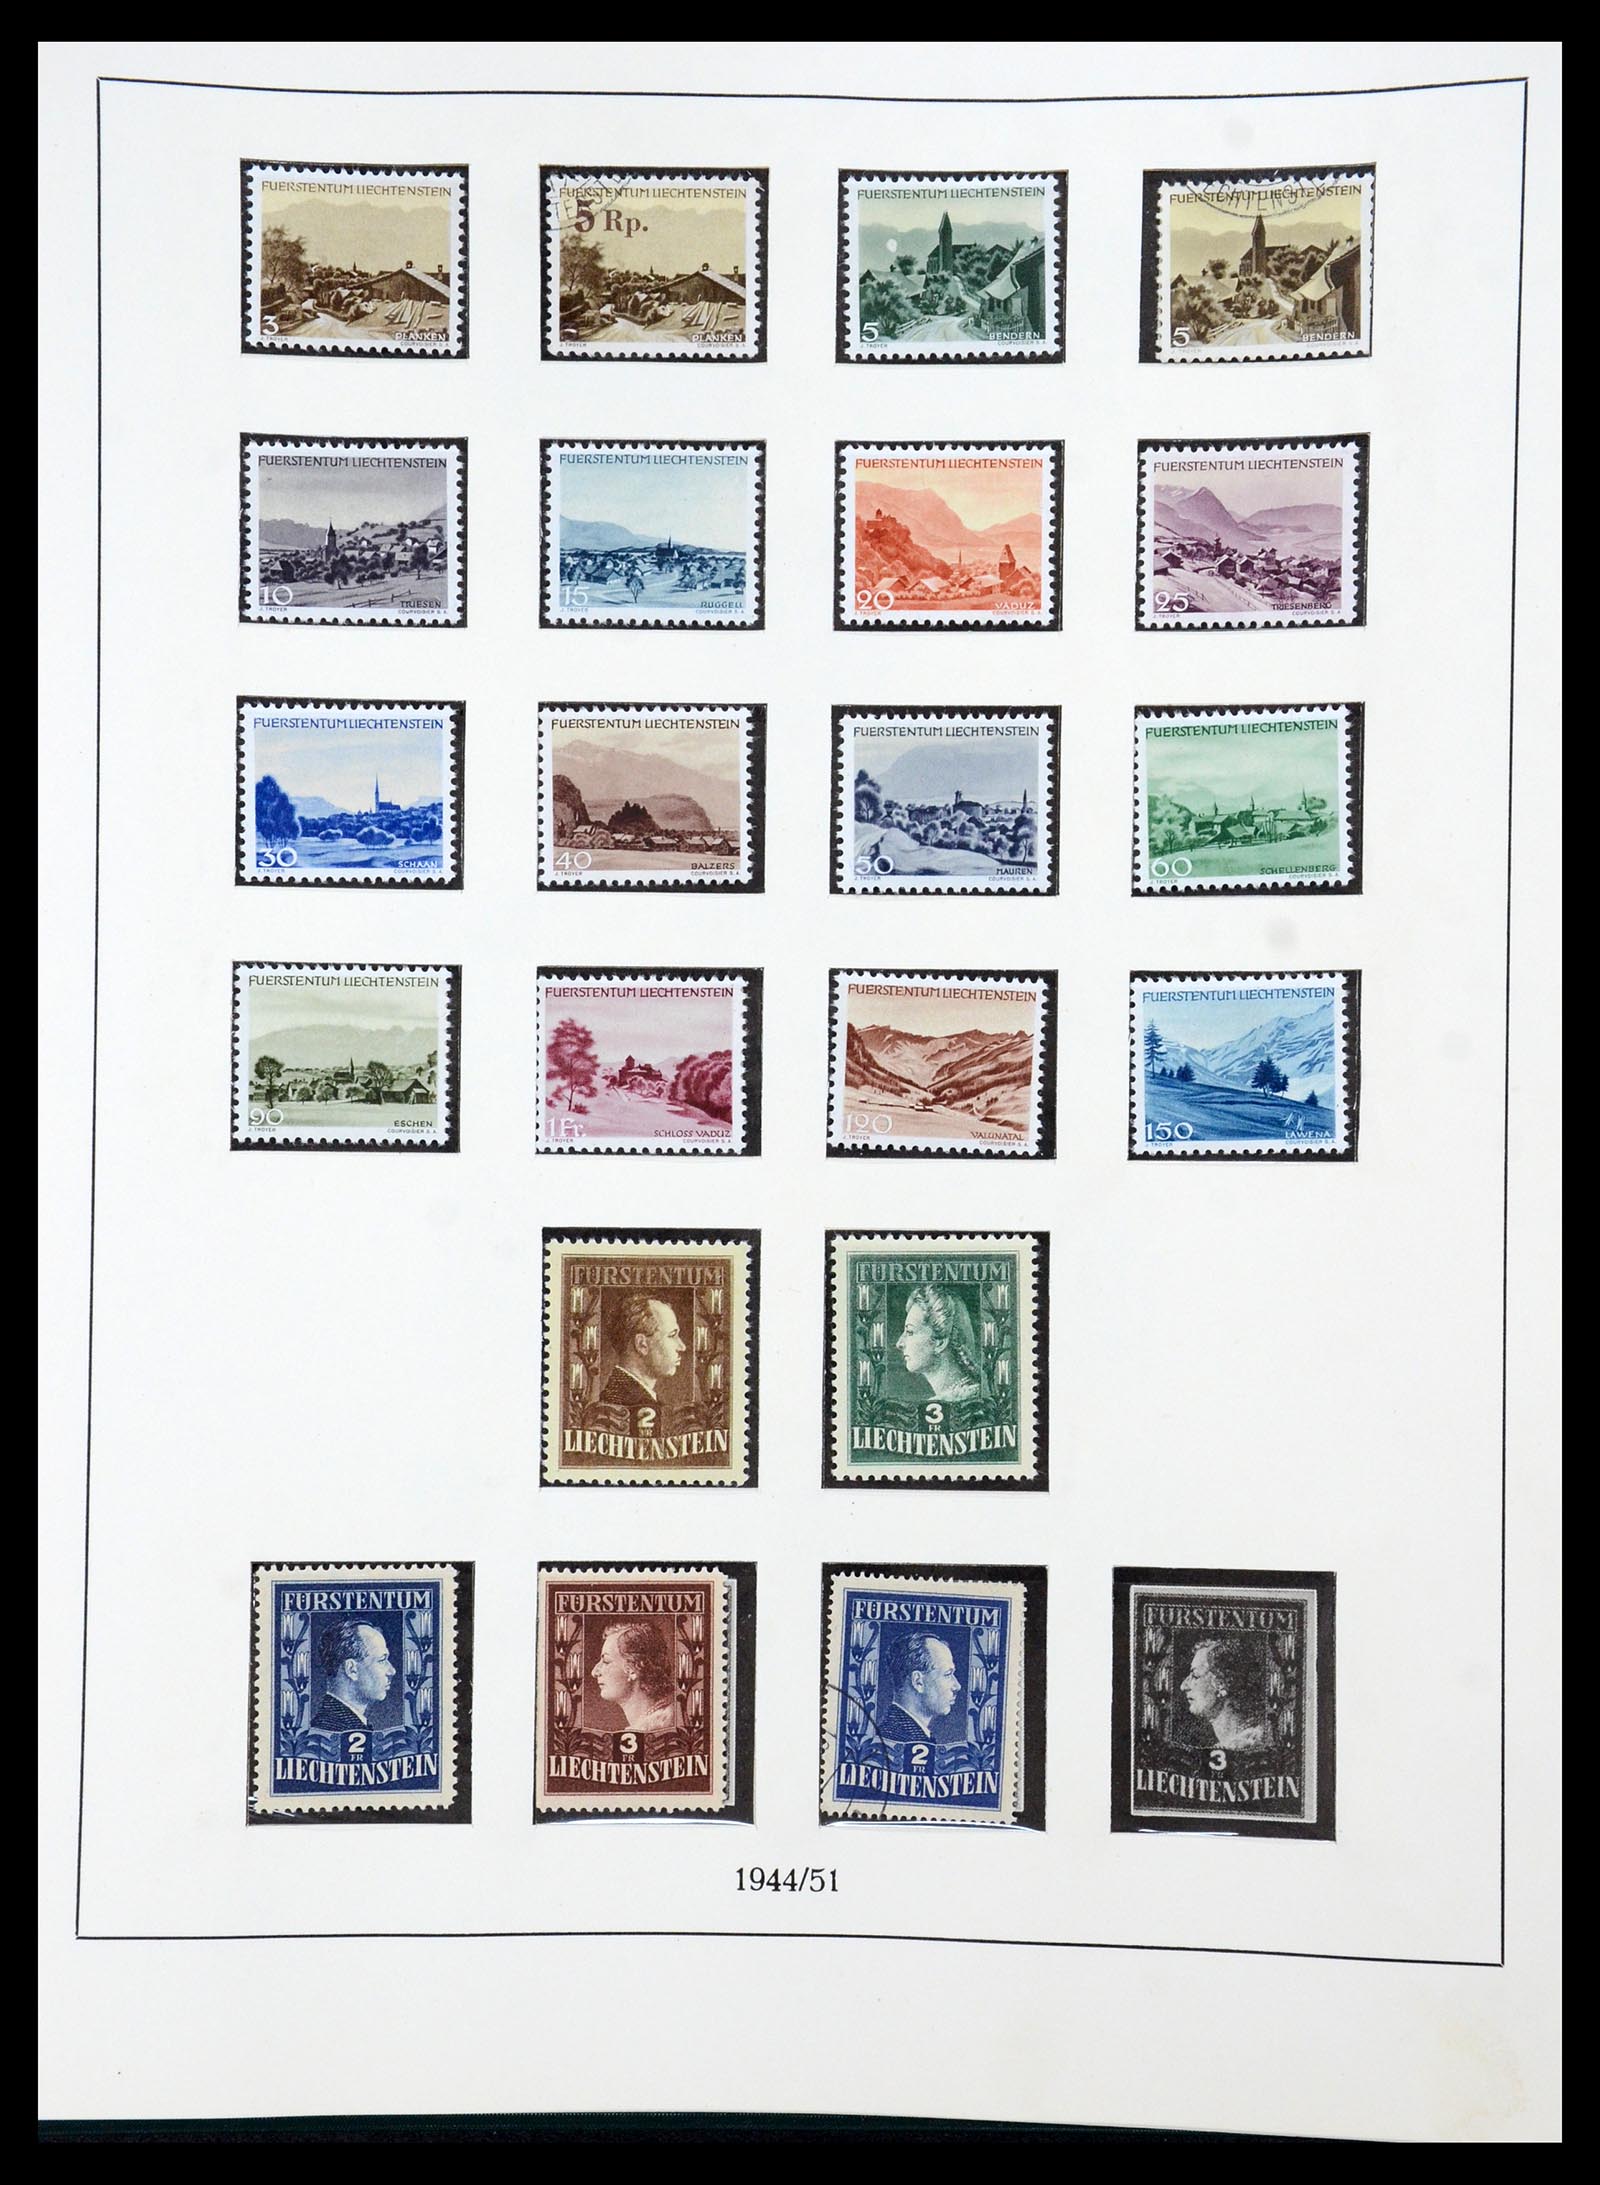 36358 023 - Stamp collection 36358 Liechtenstein 1912-1971.